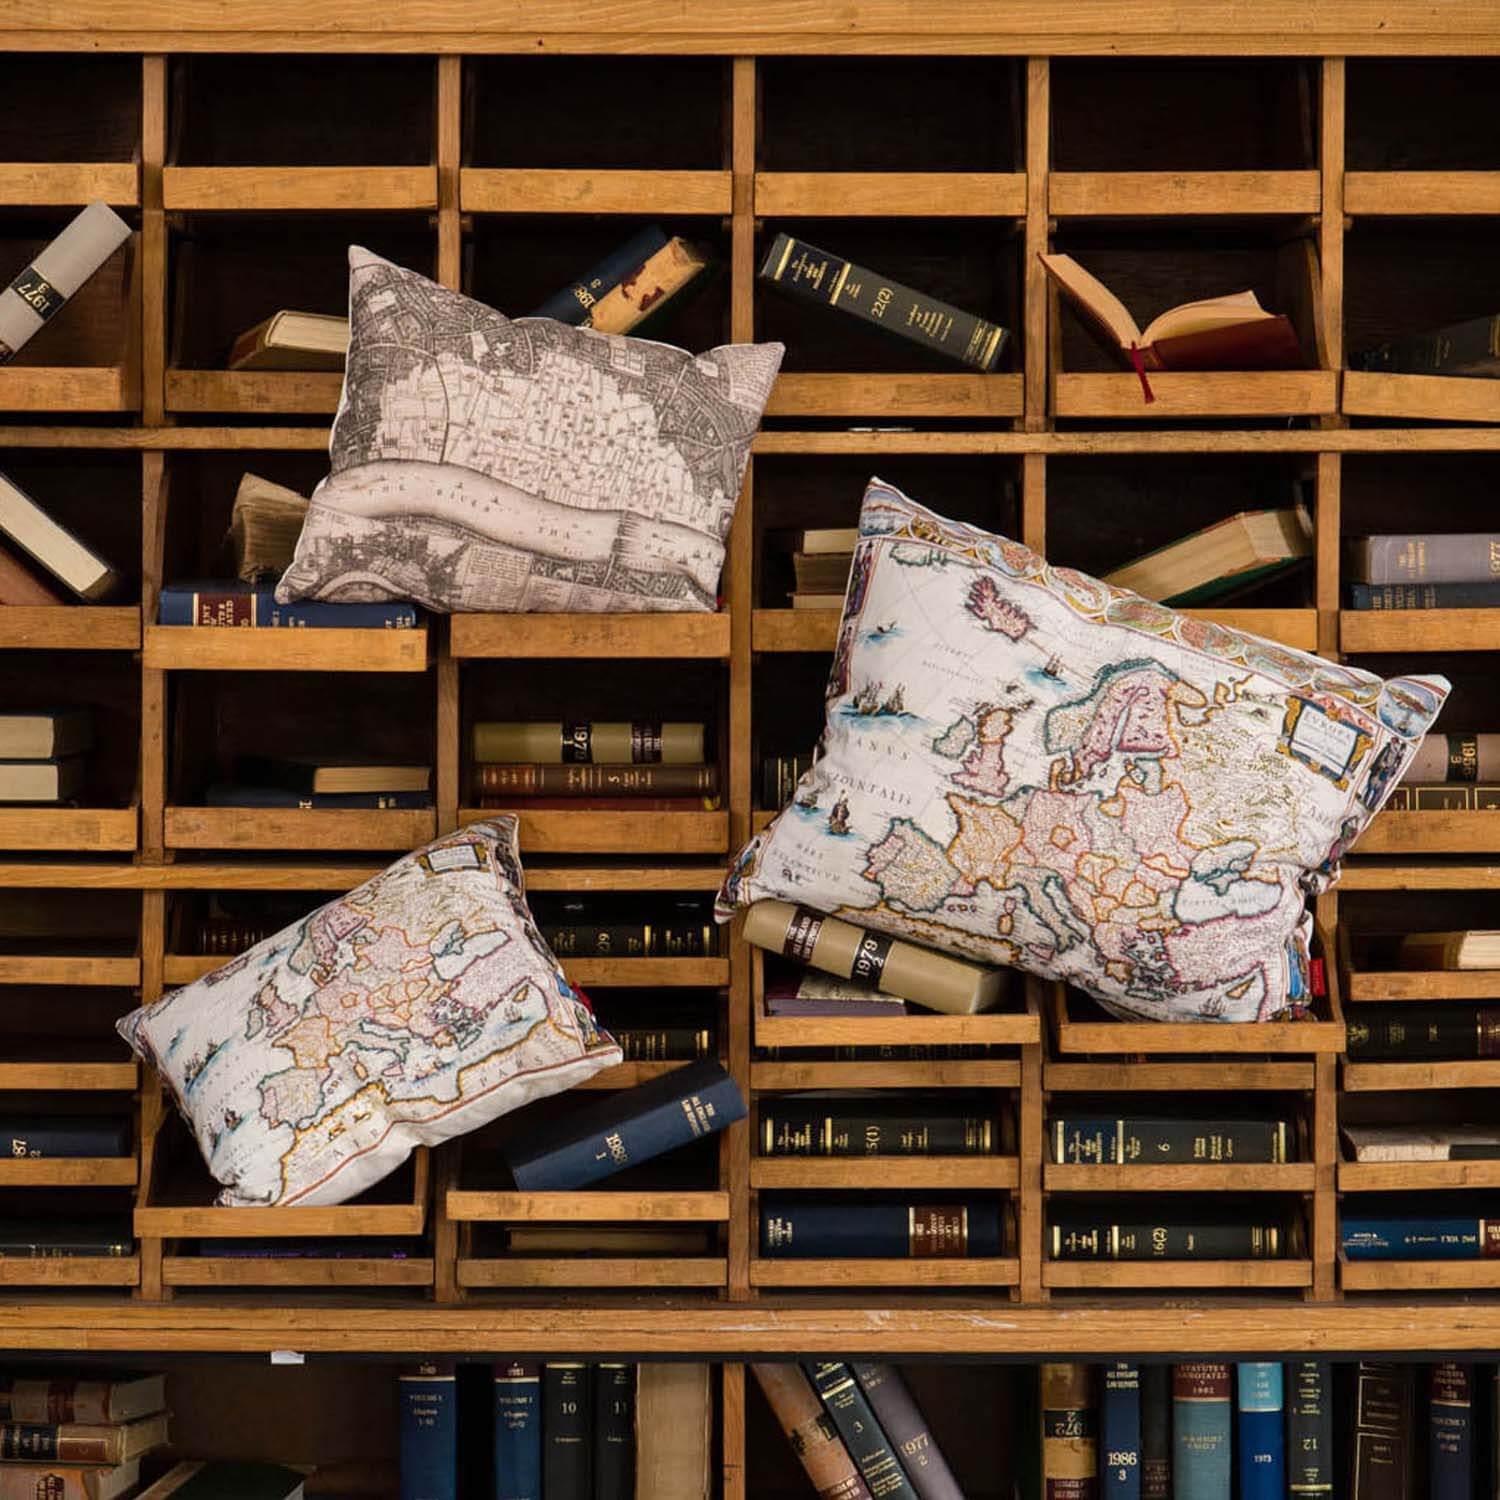 1672 Europe Map - British Library Cushions - Handmade Cushions UK - WeLoveCushions